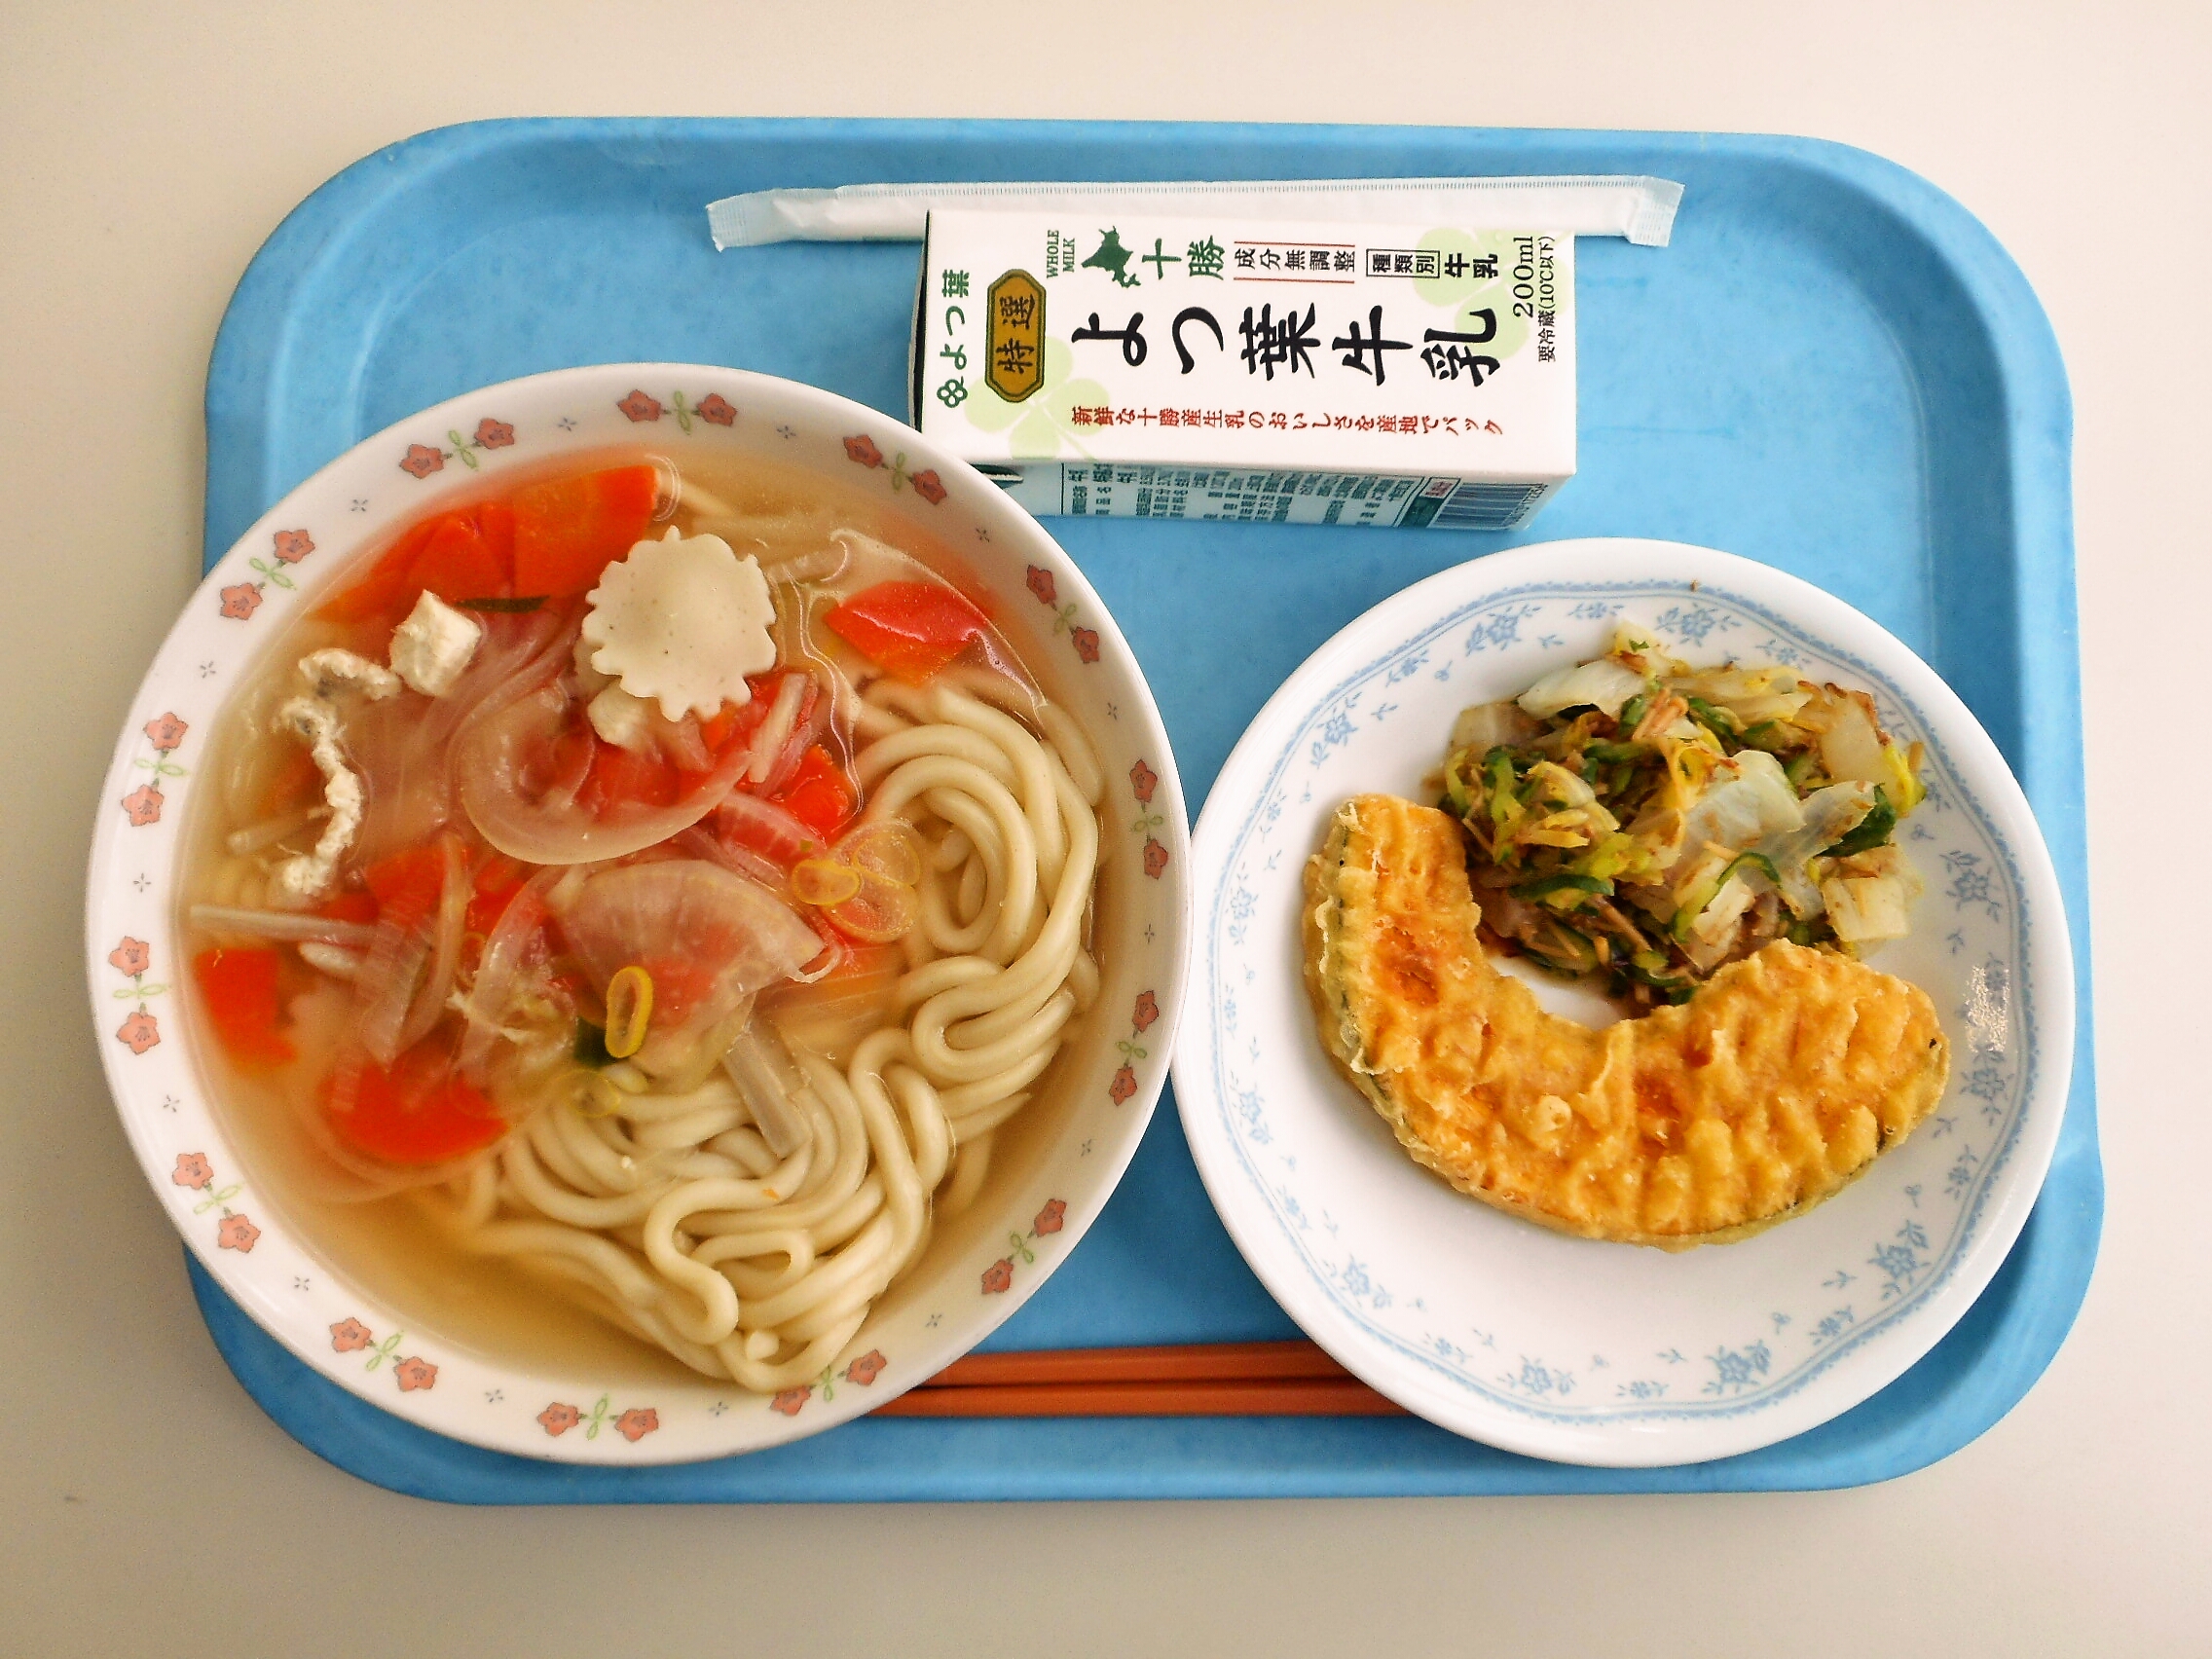 鶏だしうどん（士幌産の小麦を使用してます）、かぼちゃ天ぷら、白菜のなめ茸和え、牛乳